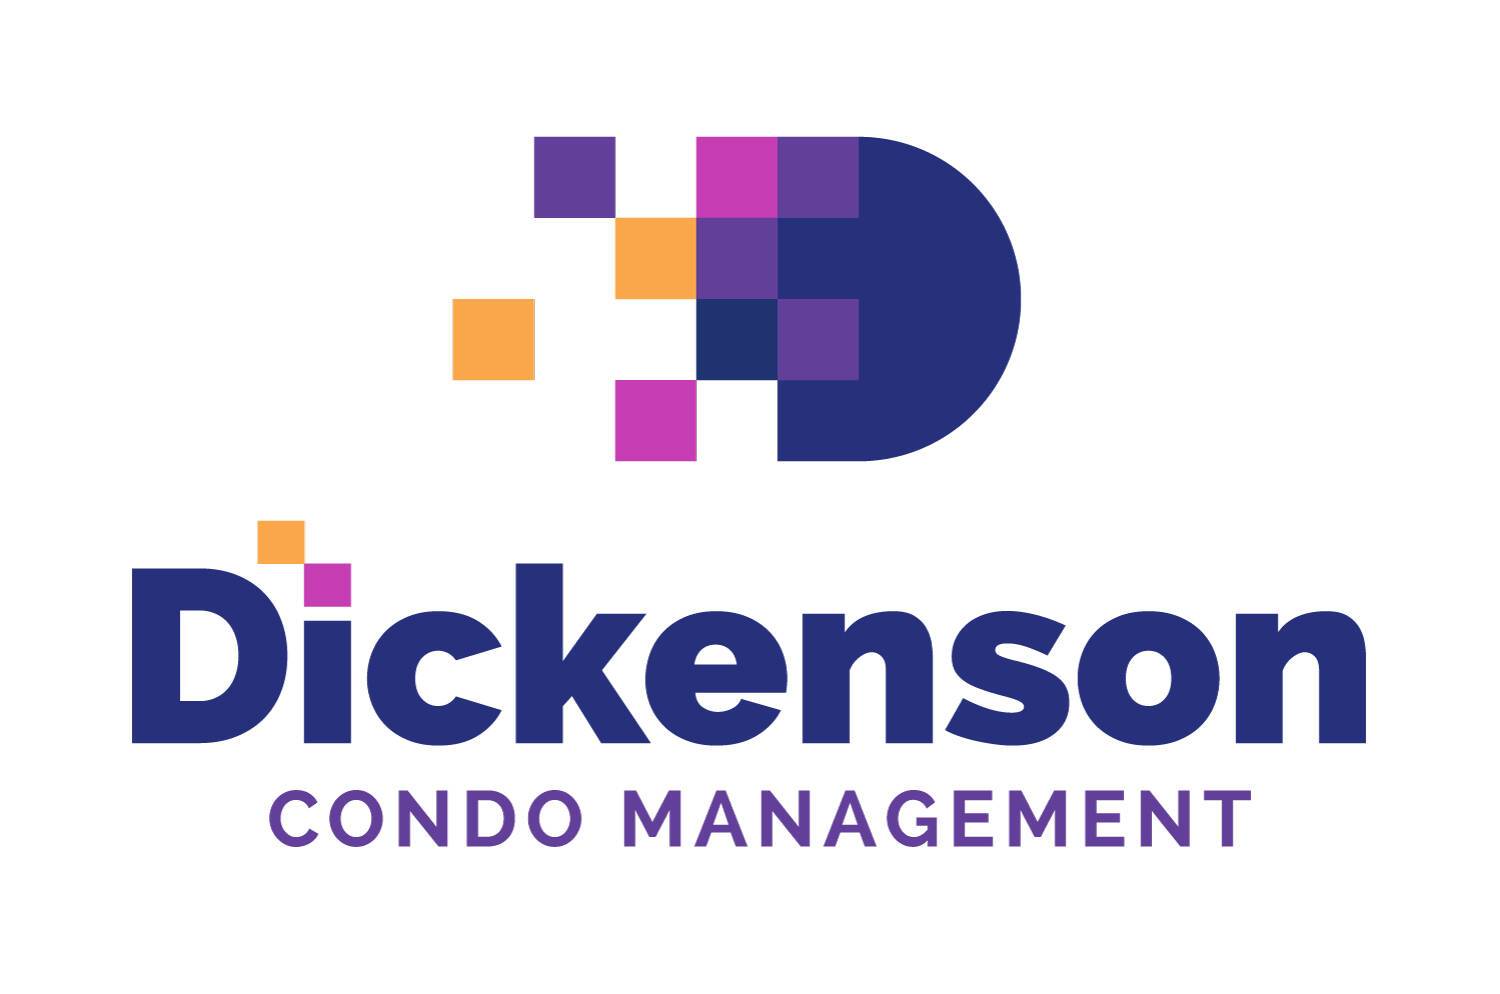 Dickenson Condo Management